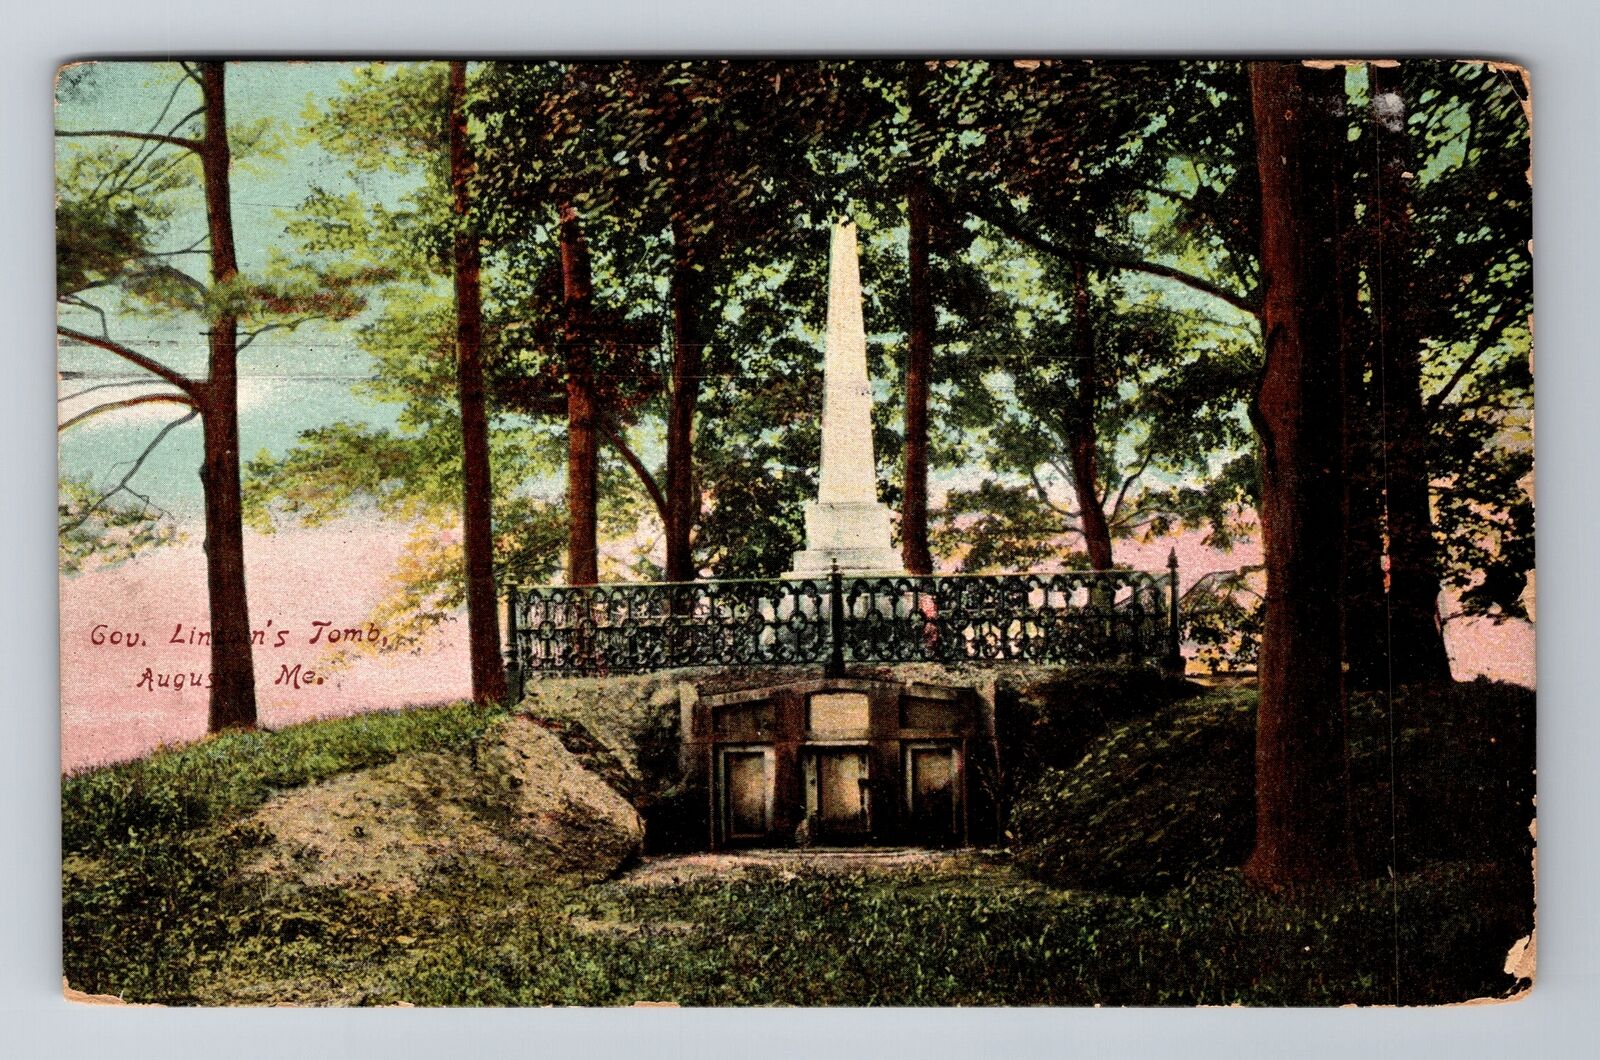 Augusta ME-Maine, Gov. Lincoln's Tomb, c1909 Antique Vintage Souvenir Postcard